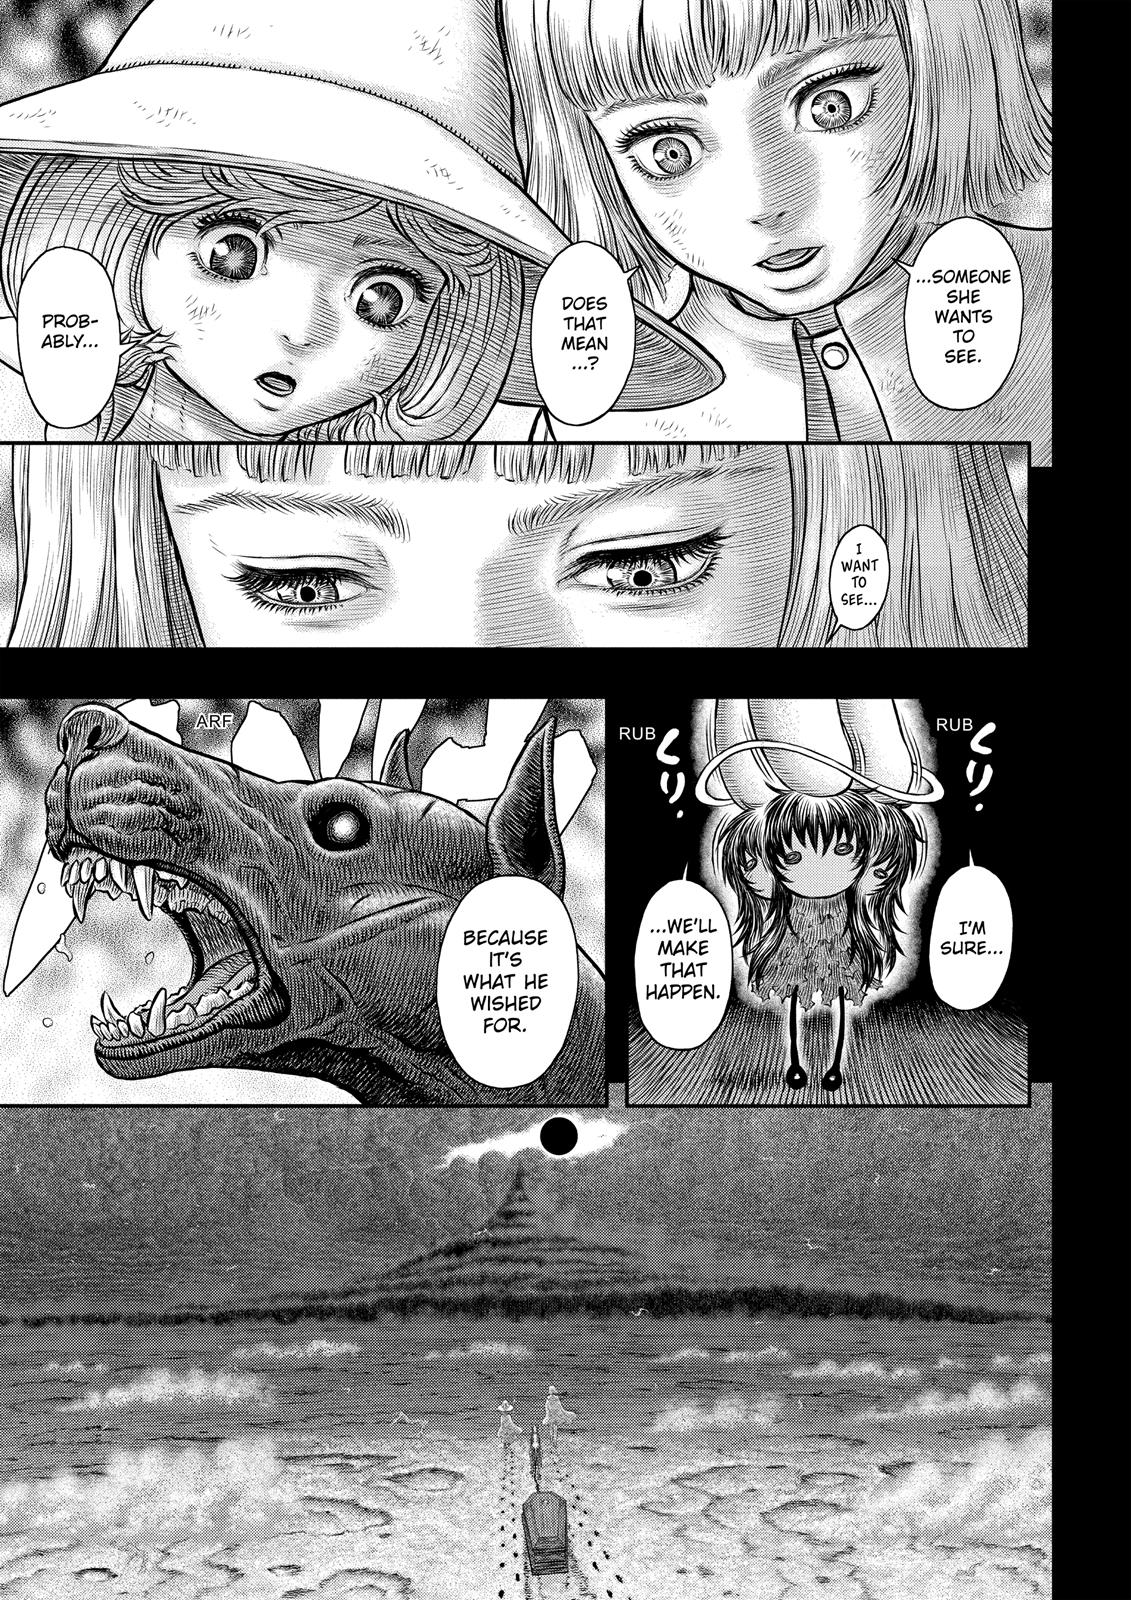 Berserk Manga Chapter 350 image 18